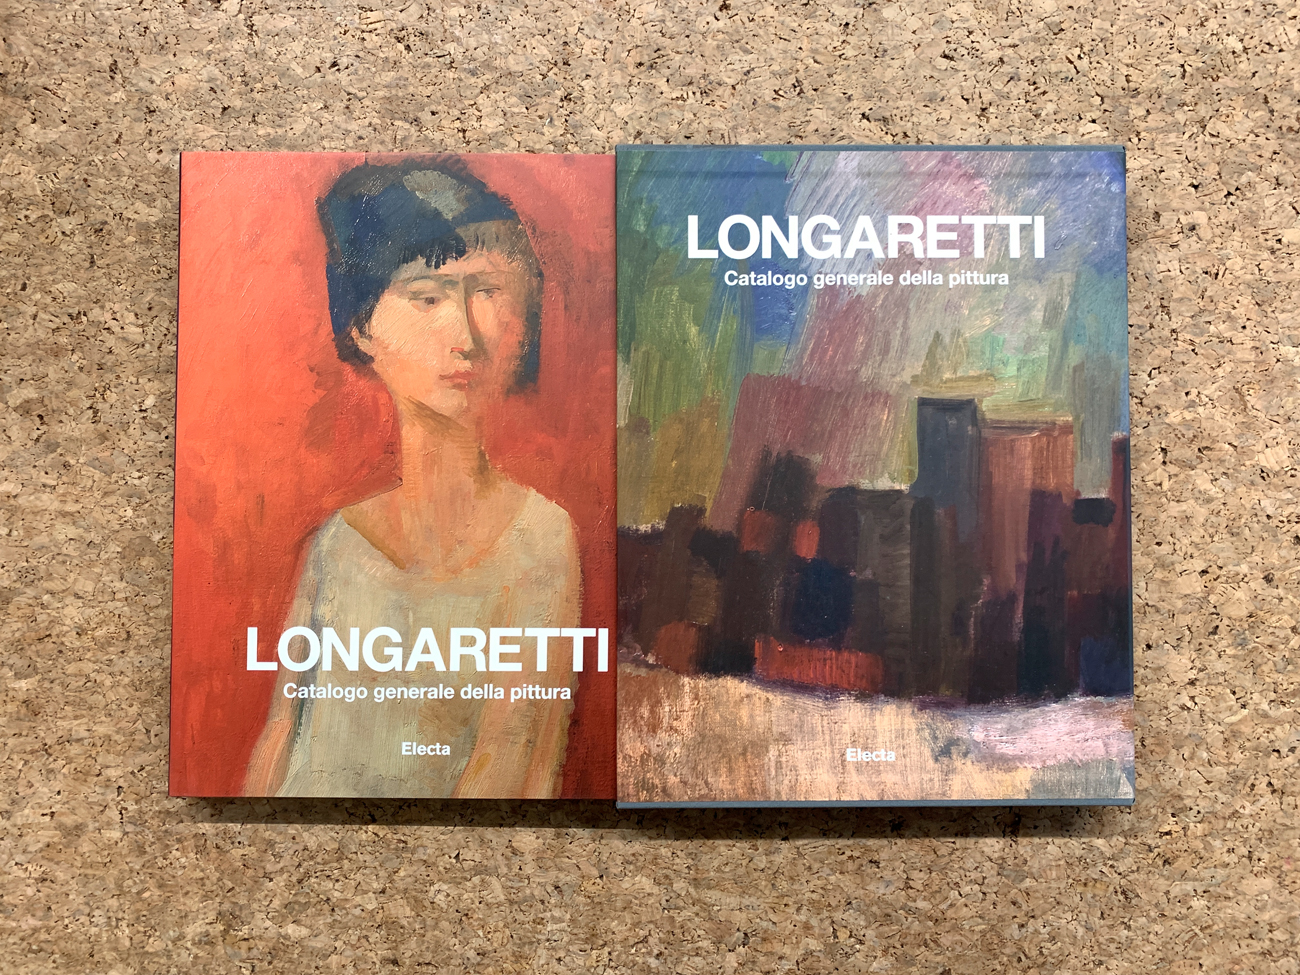 TRENTO LONGARETTI - Longaretti. Catalogo generale della pittura. Volume primo 1930-1972, 2014